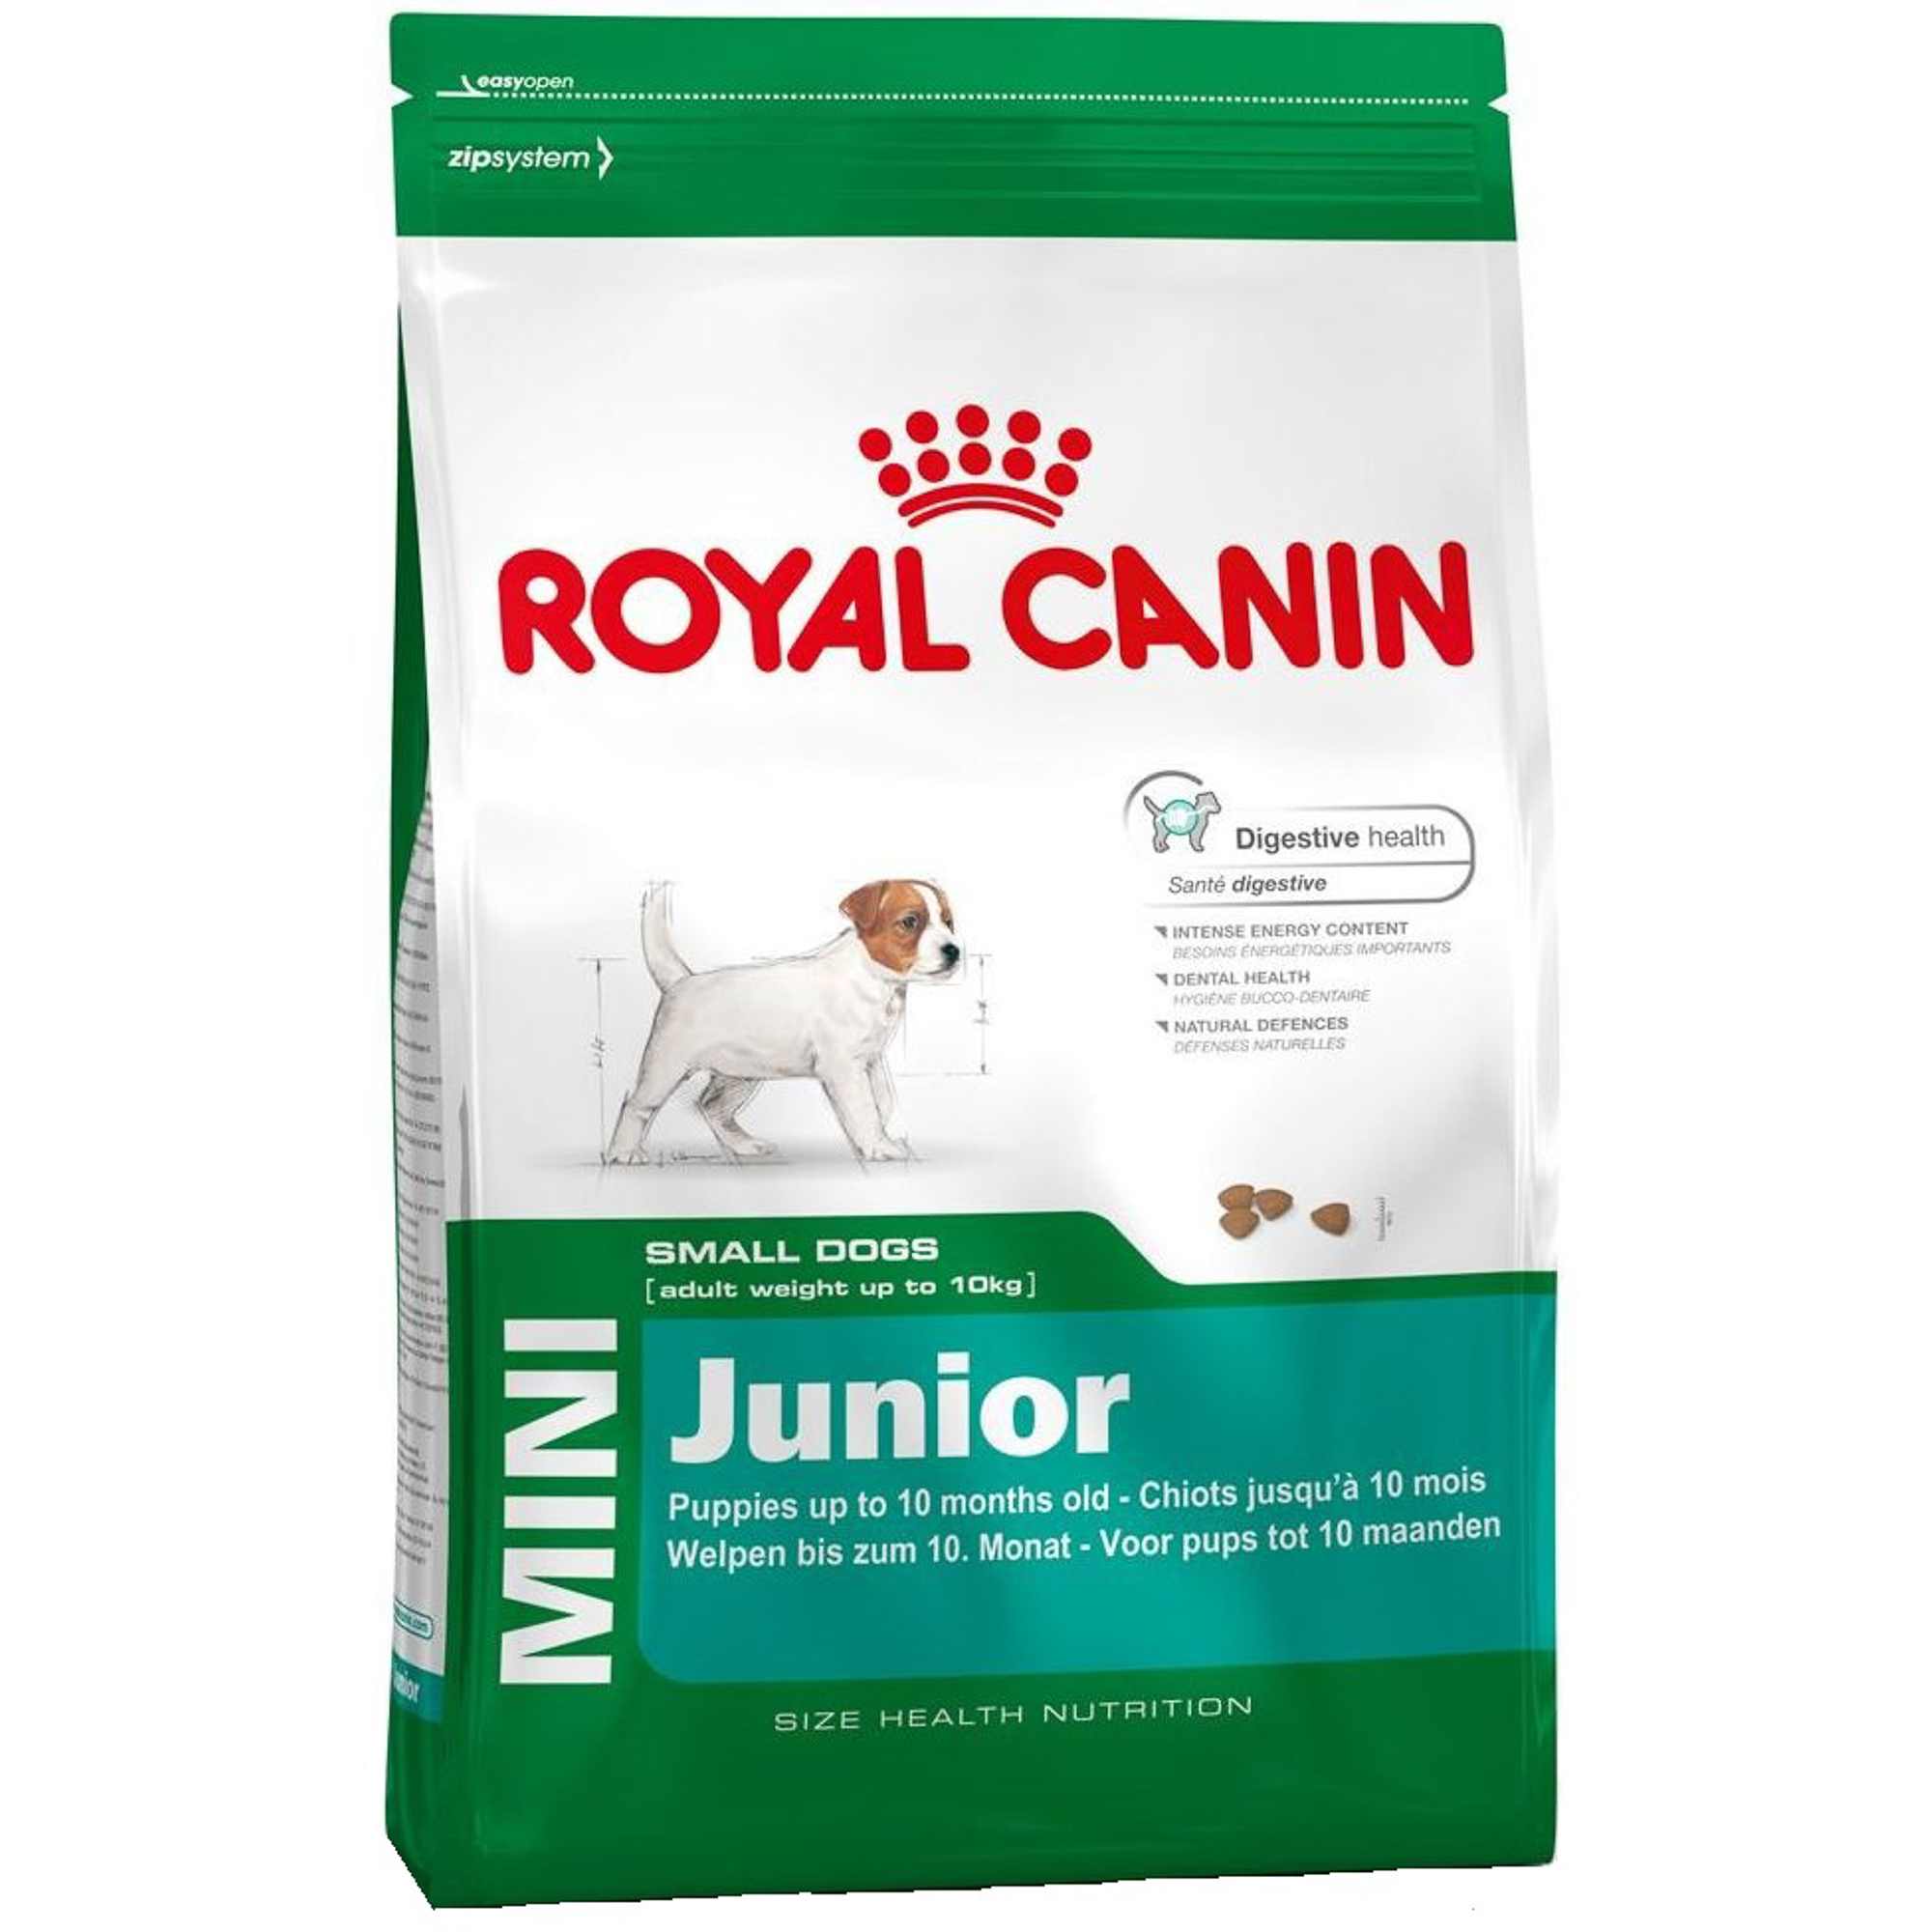 Корм для щенков Royal Canin JUNIOR для мелких пород, с 2 до 10 месяцев, 2 кг корм для щенков pro plan для средних пород с чувствительной кожей лосось 3 кг